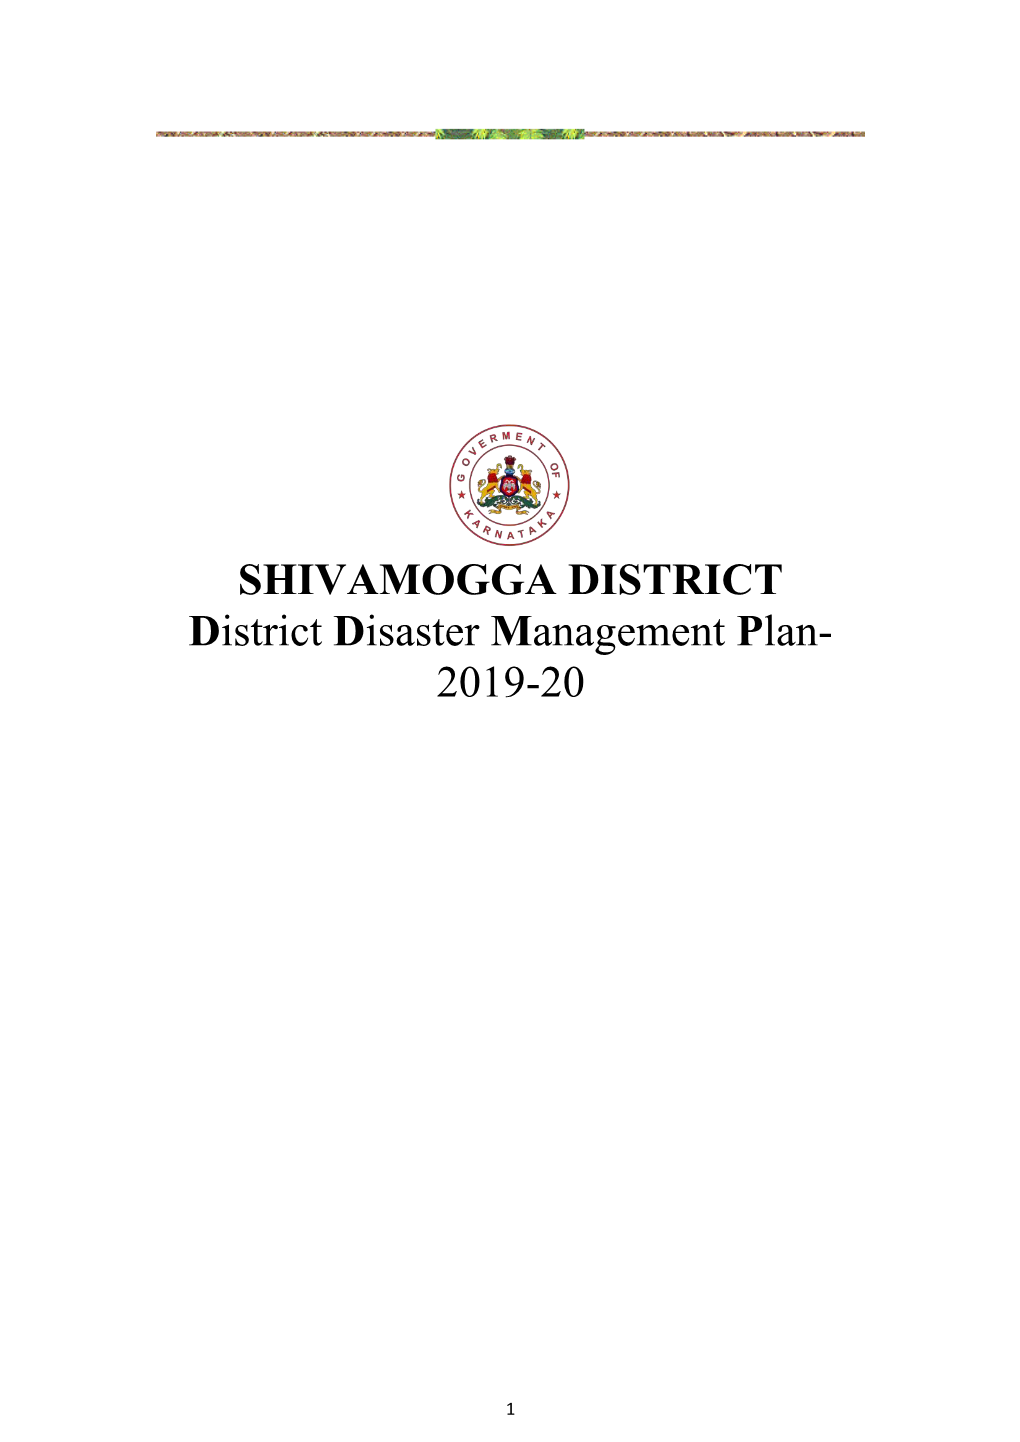 SHIVAMOGGA DISTRICT District Disaster Management Plan- 2019-20